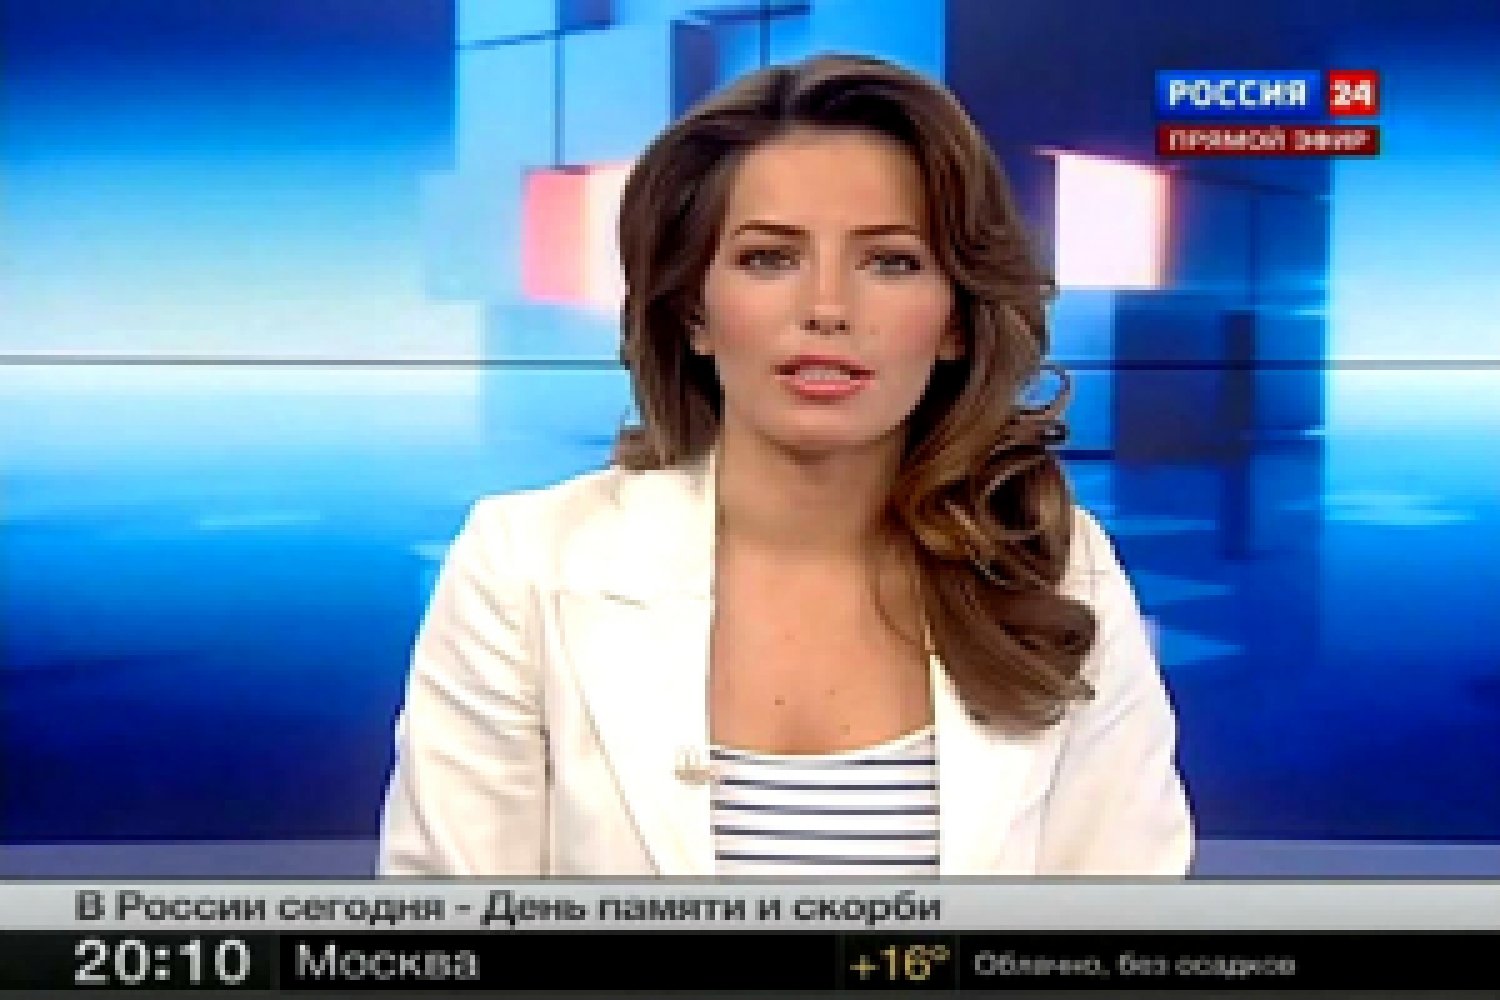 Россия 24 телеведущие женщины список с фото